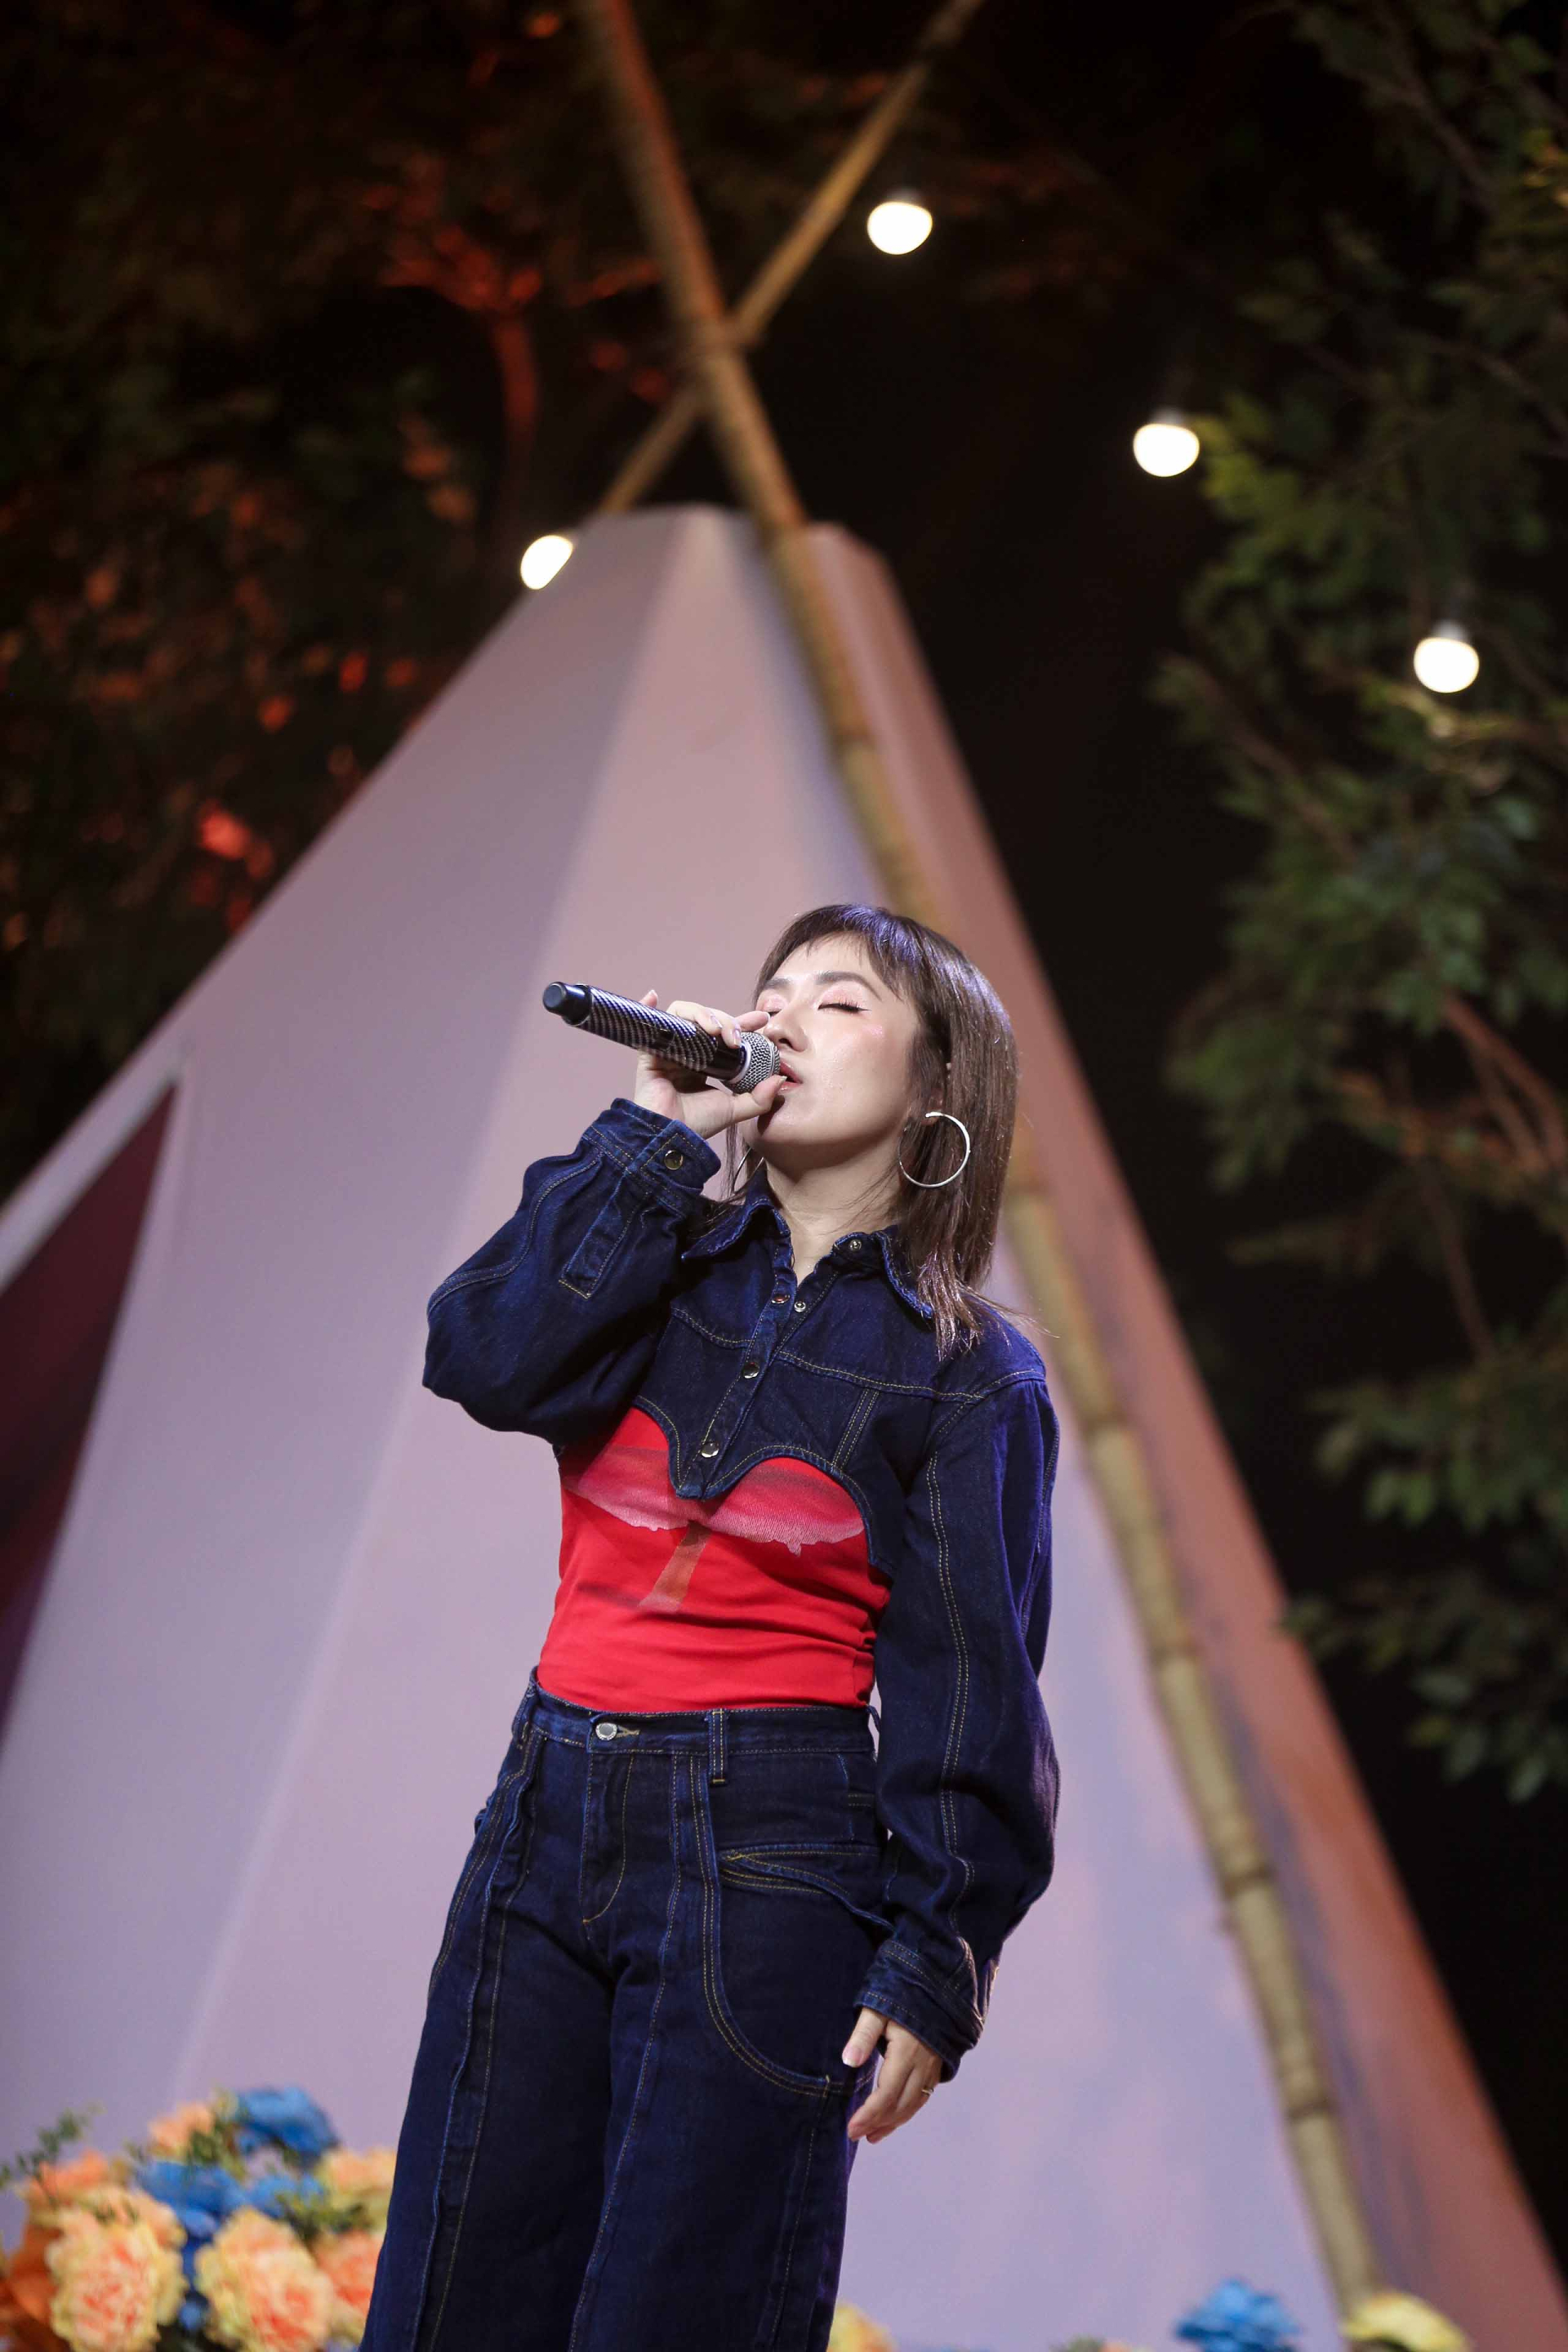 Đến với chương trình, Huỳnh Tú đã mang tới ca khúc “Đừng yêu nữa em mệt rồi” – một ca khúc được thể hiện thành công qua giọng hát của ca sĩ Min.